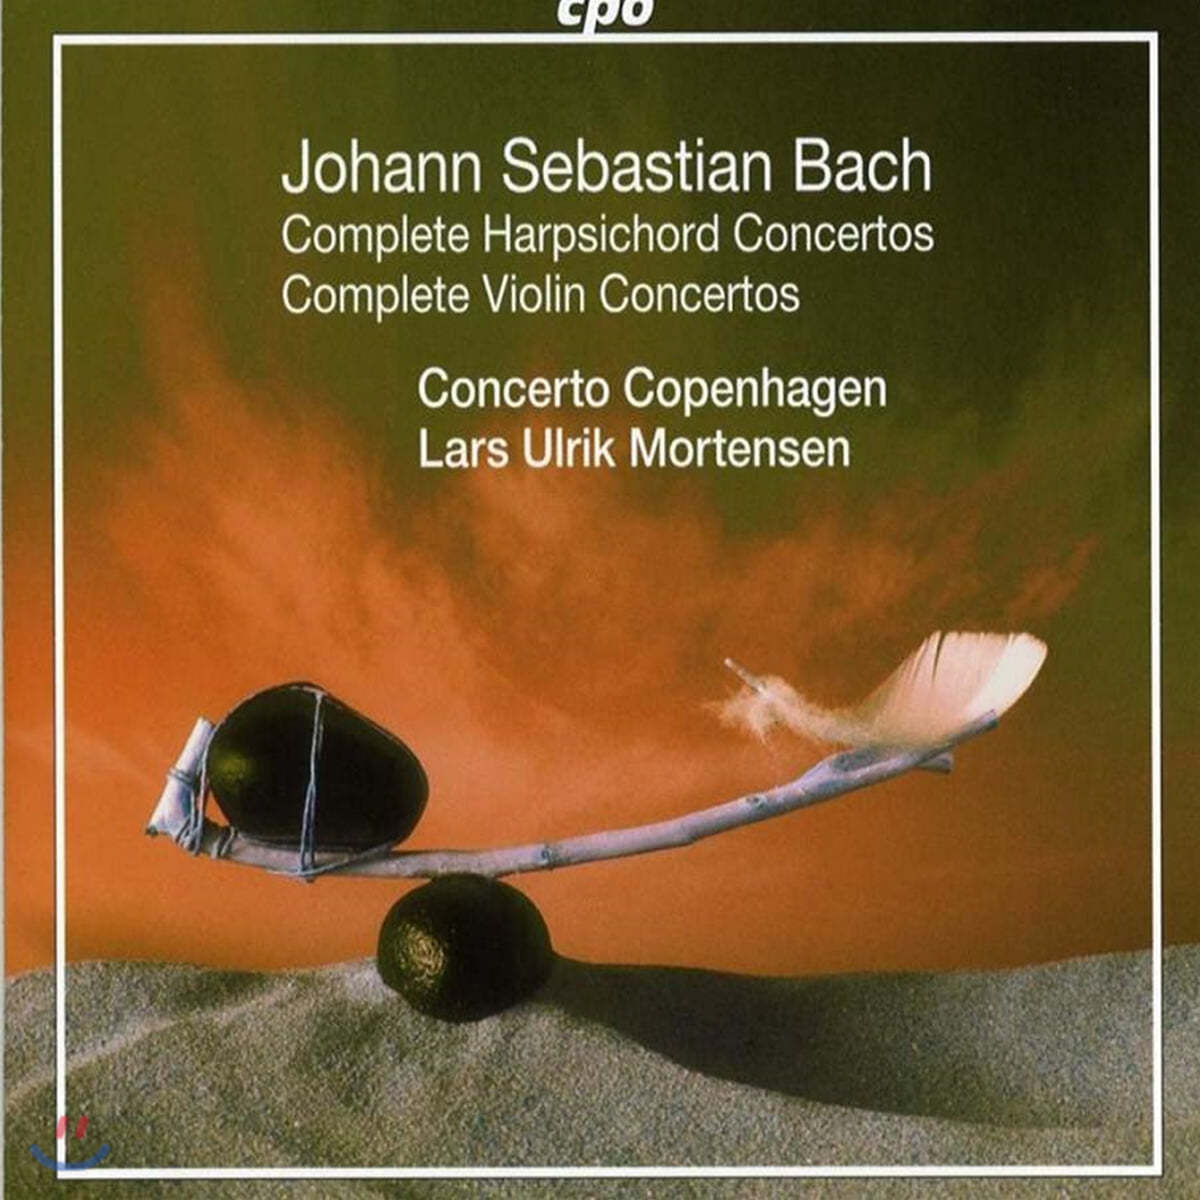 Lars Ulrik Mortensen 바흐: 하프시코드 &amp; 바이올린 협주곡 전곡집 (Bach: Complete Harpsichord Concertos, Complete Violin Concertos)